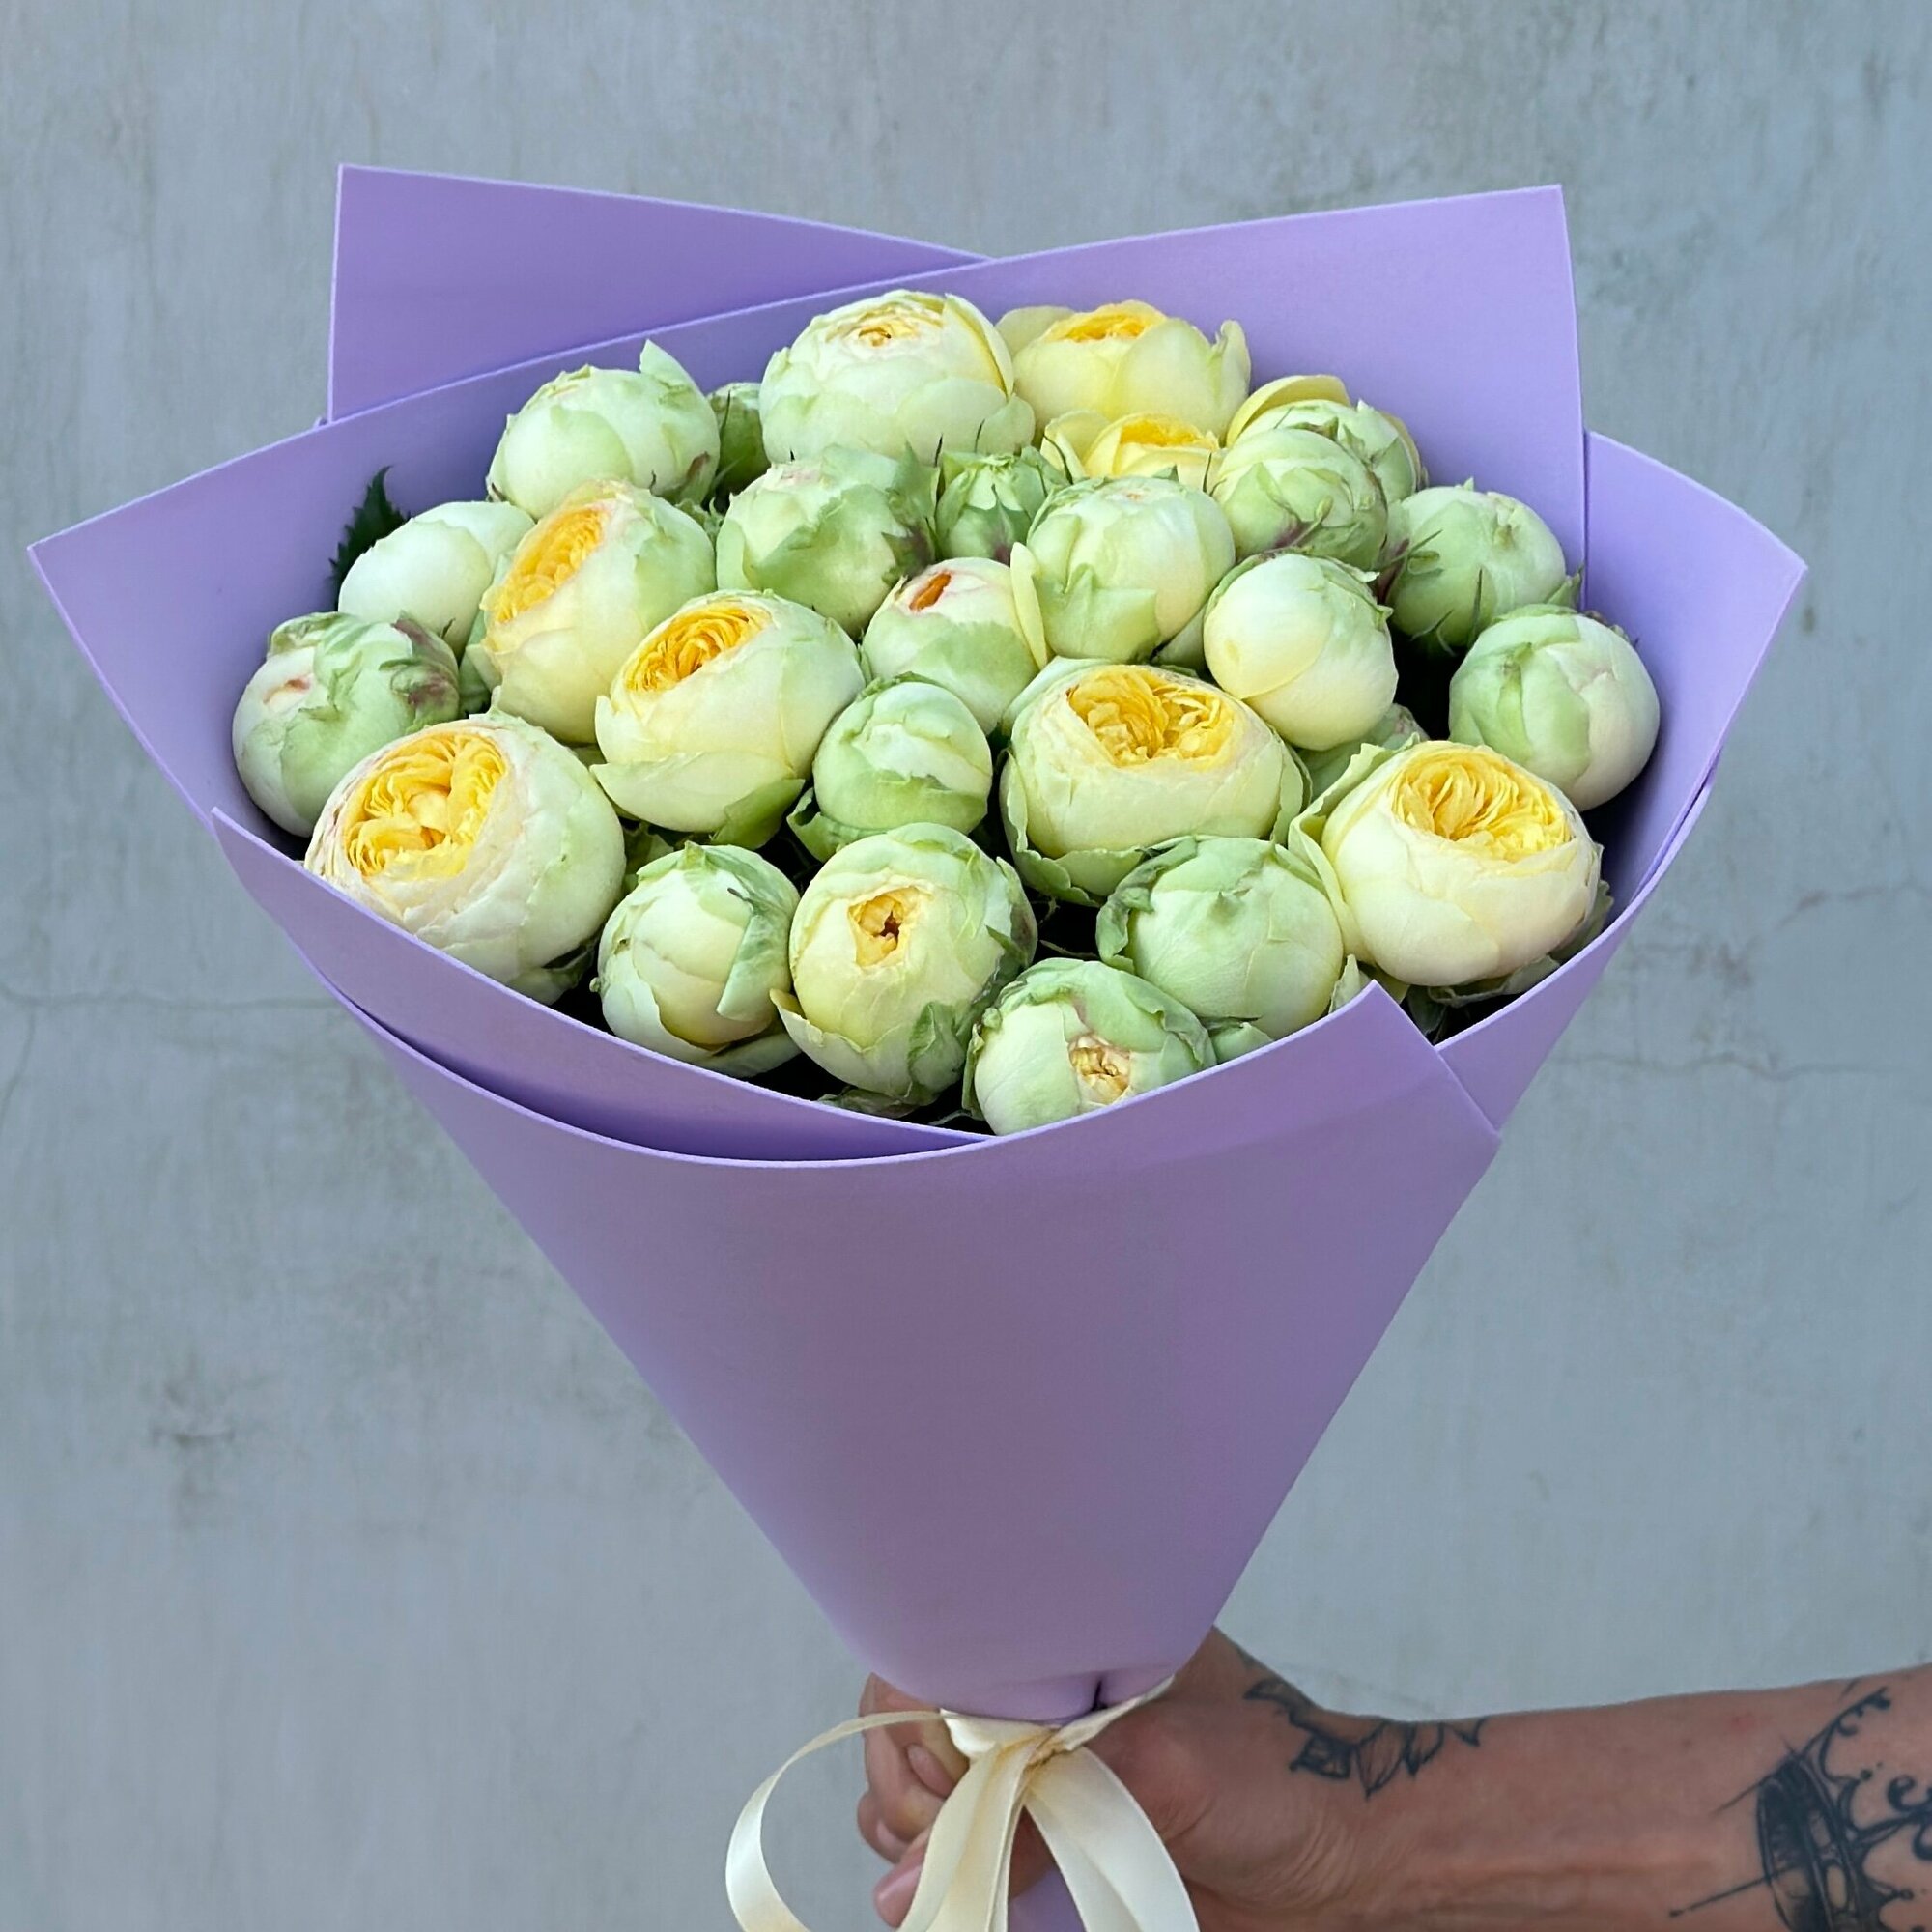 Букет из 15 кустовых пионовидных роз "Пиони Баблз" / фиолетовый /Радуга Букет